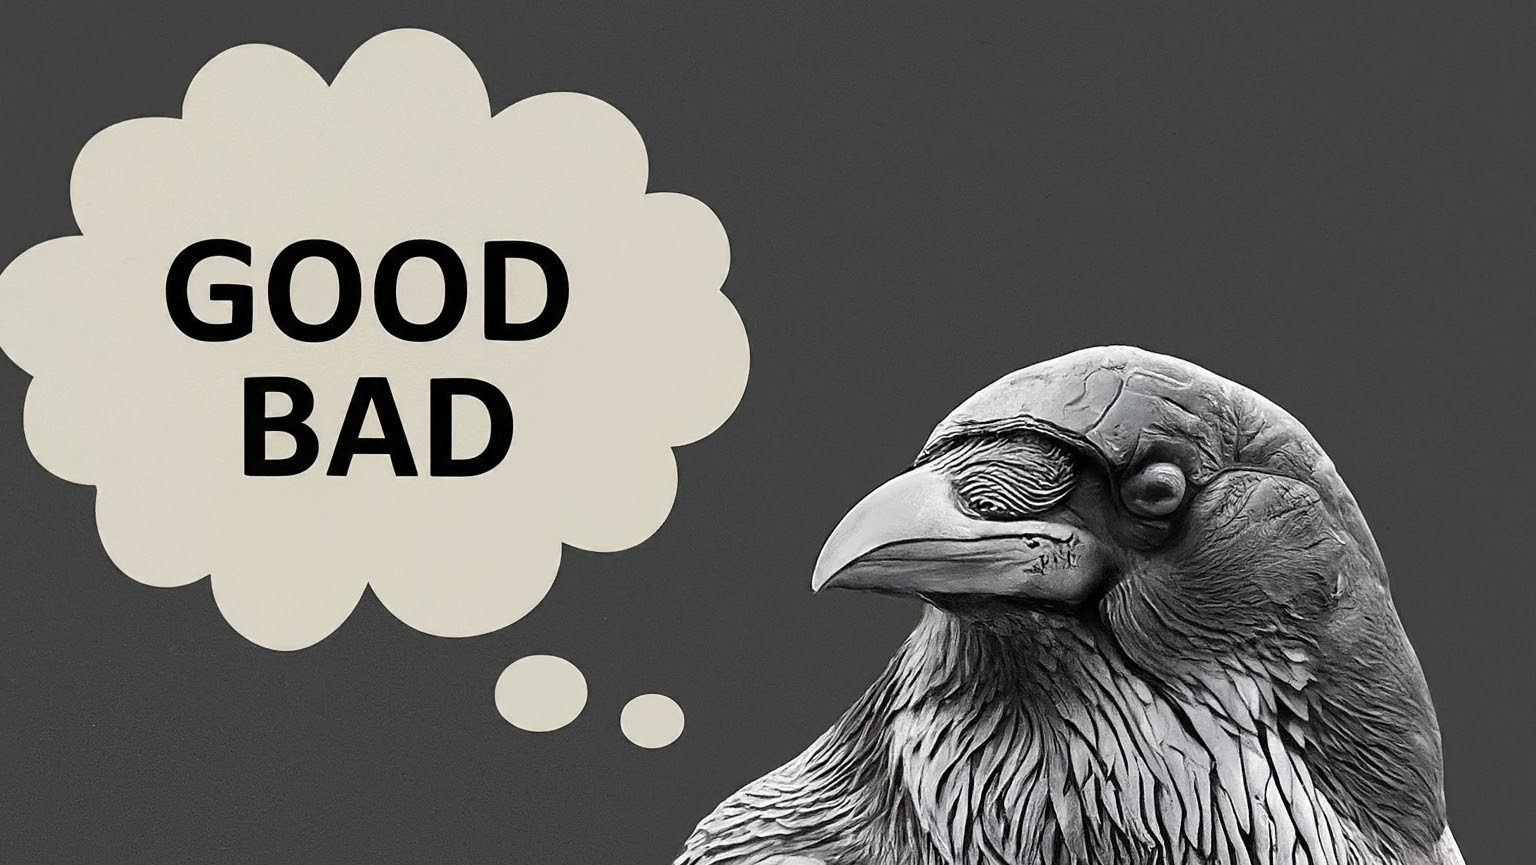 Do crows have morals?